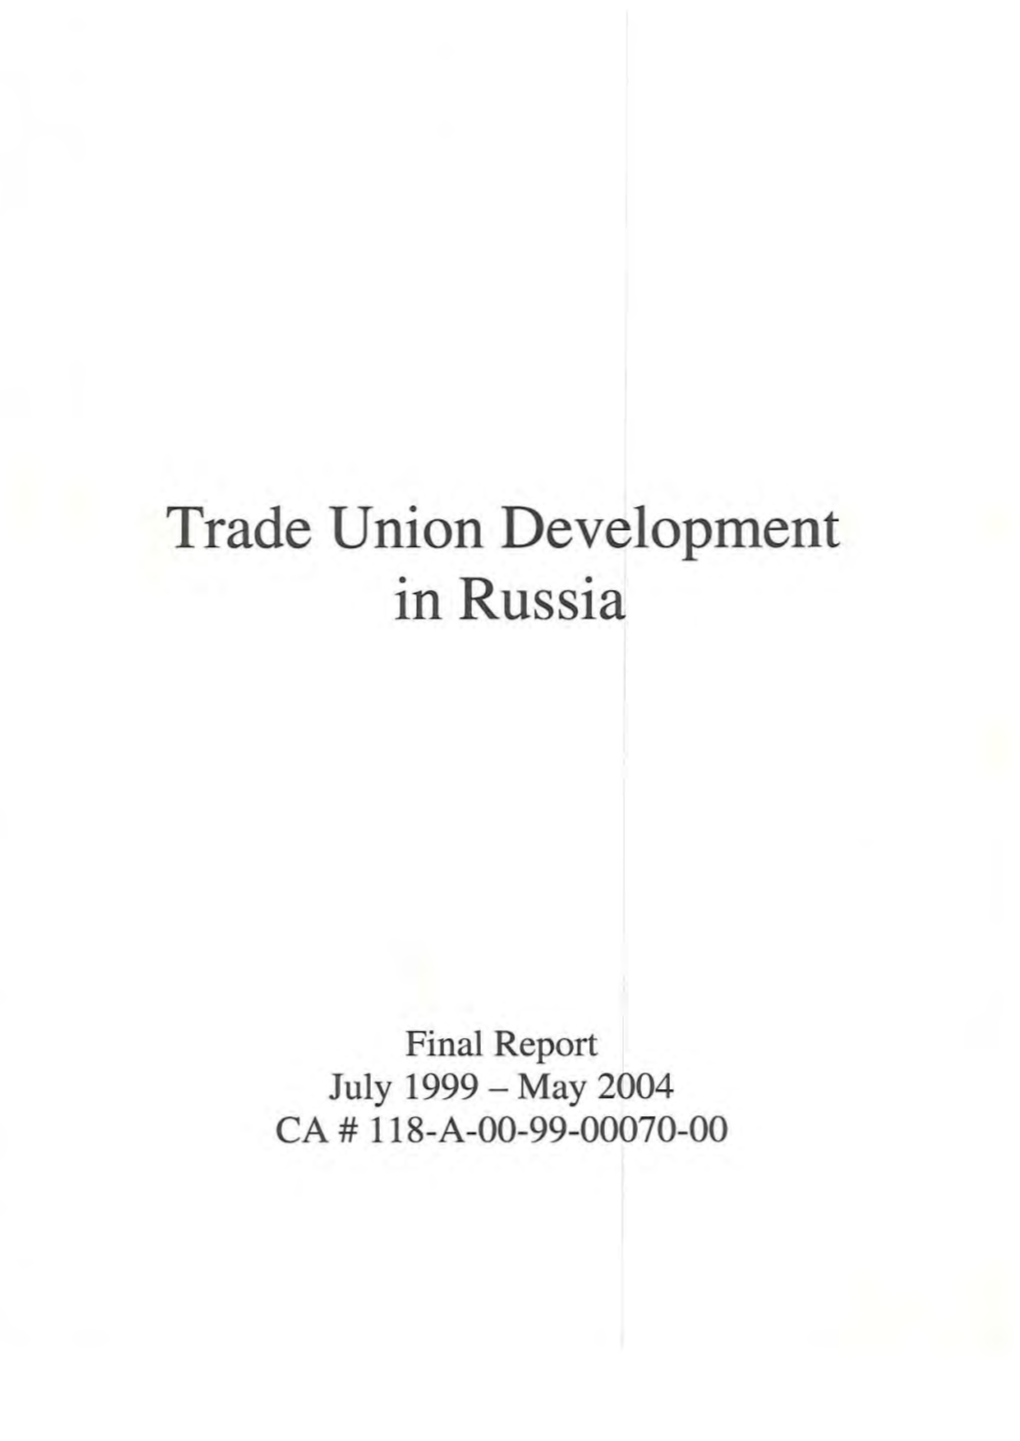 Trade Union Development in Russia